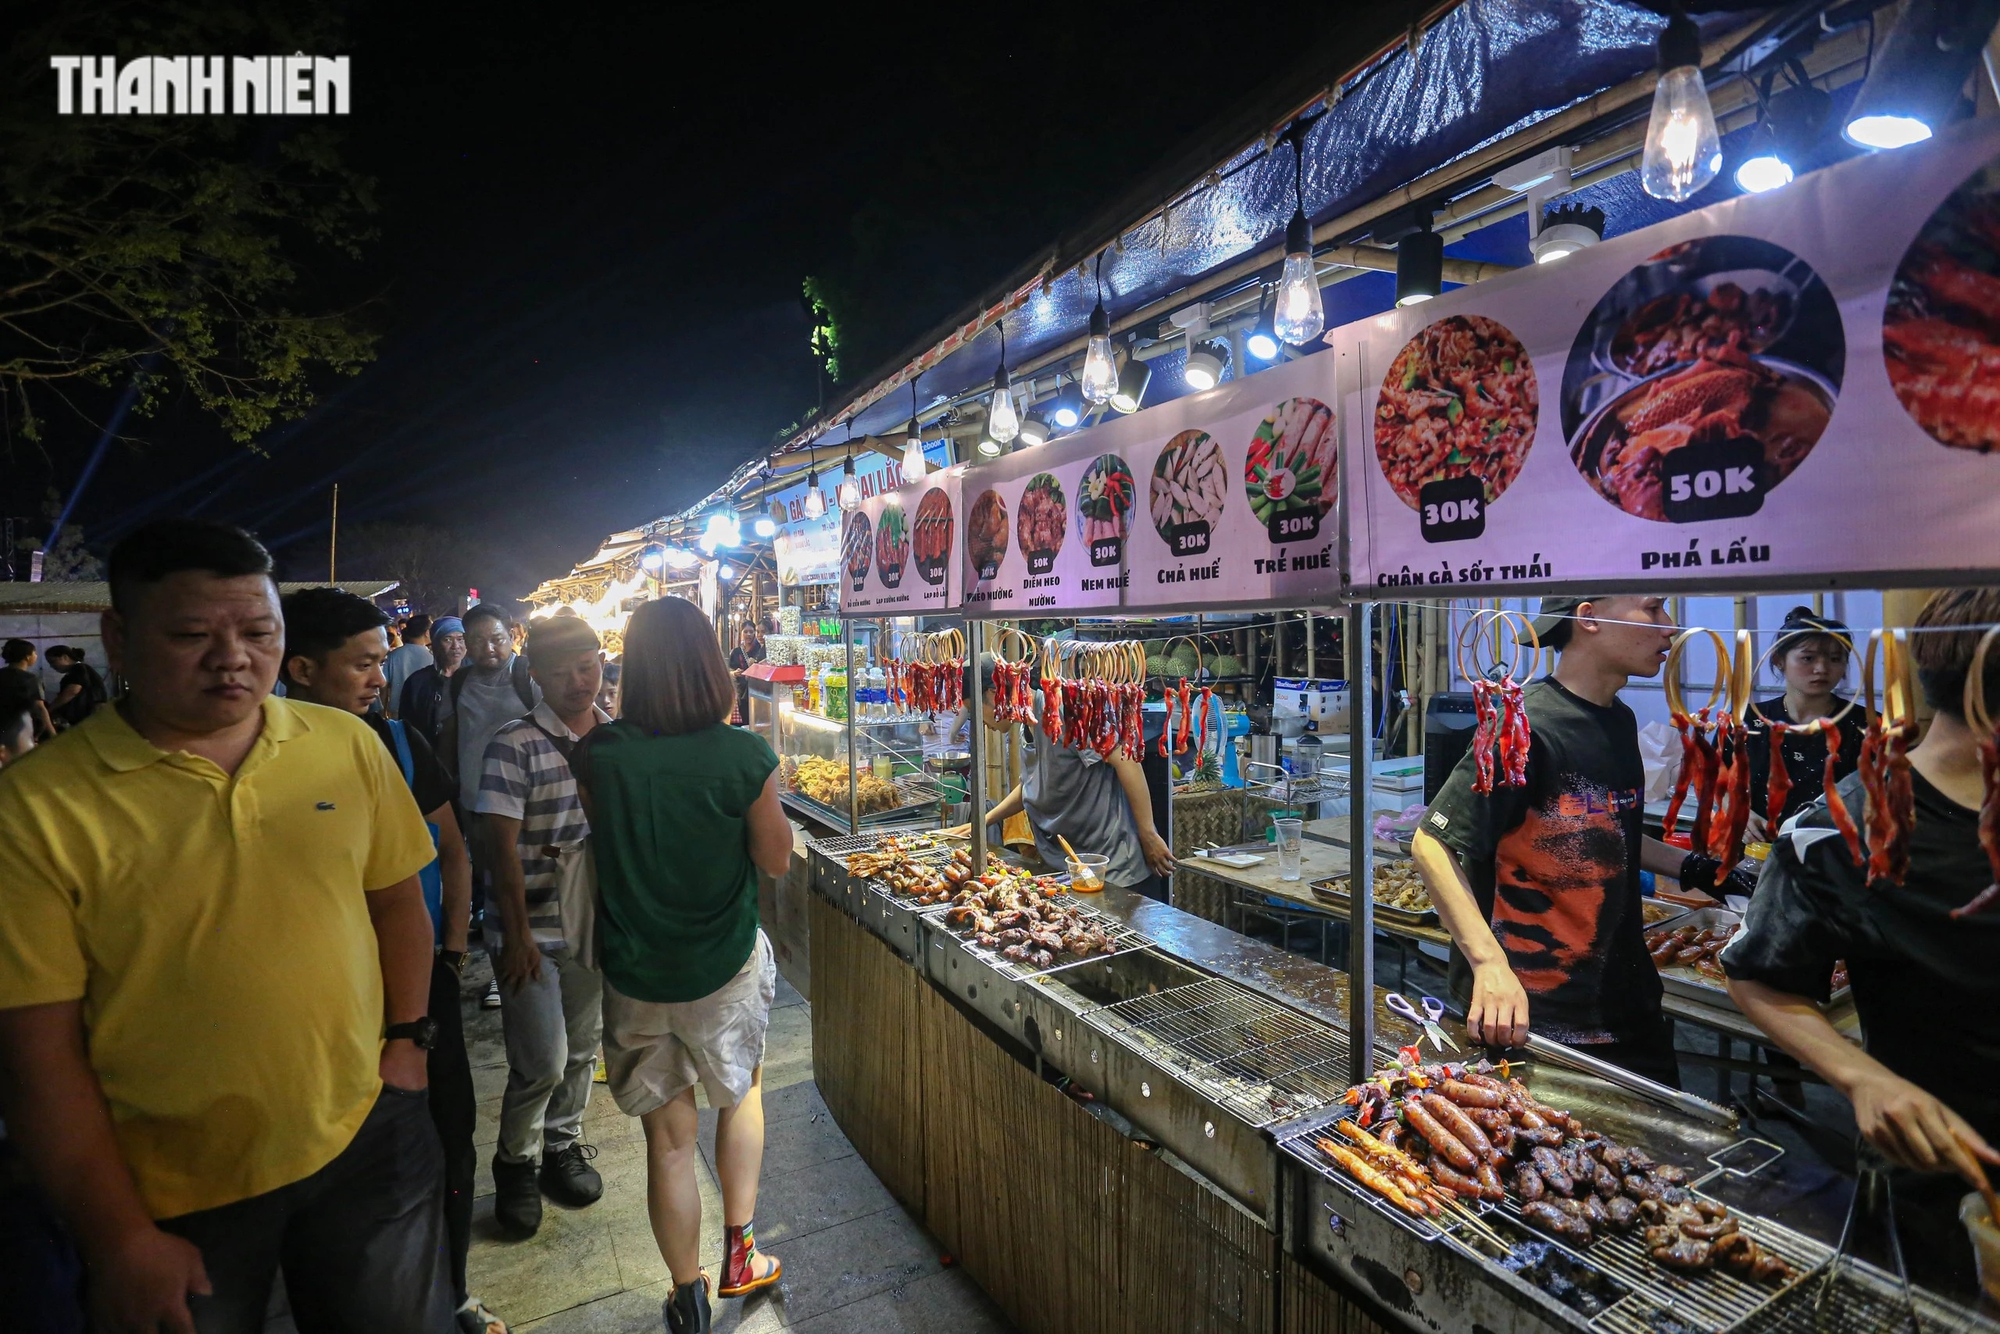 Phiên chợ có 80 gian hàng, bày bán các món ăn của 3 miền Bắc - Trung - Nam